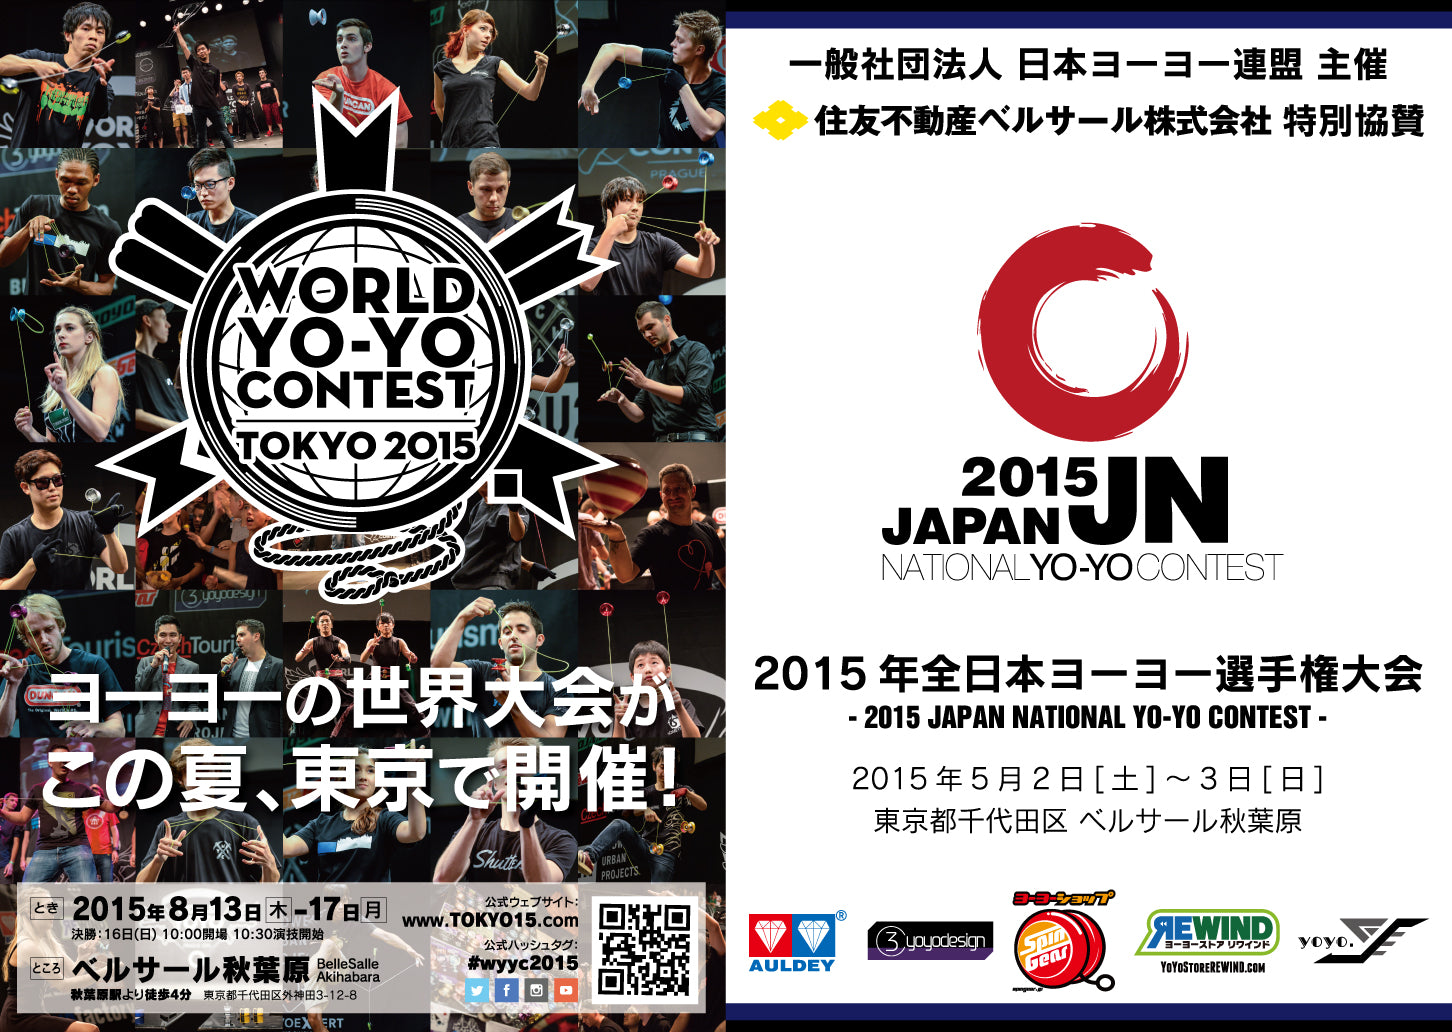 2015 ジャパンナショナルヨーヨーコンテスト パンフレット